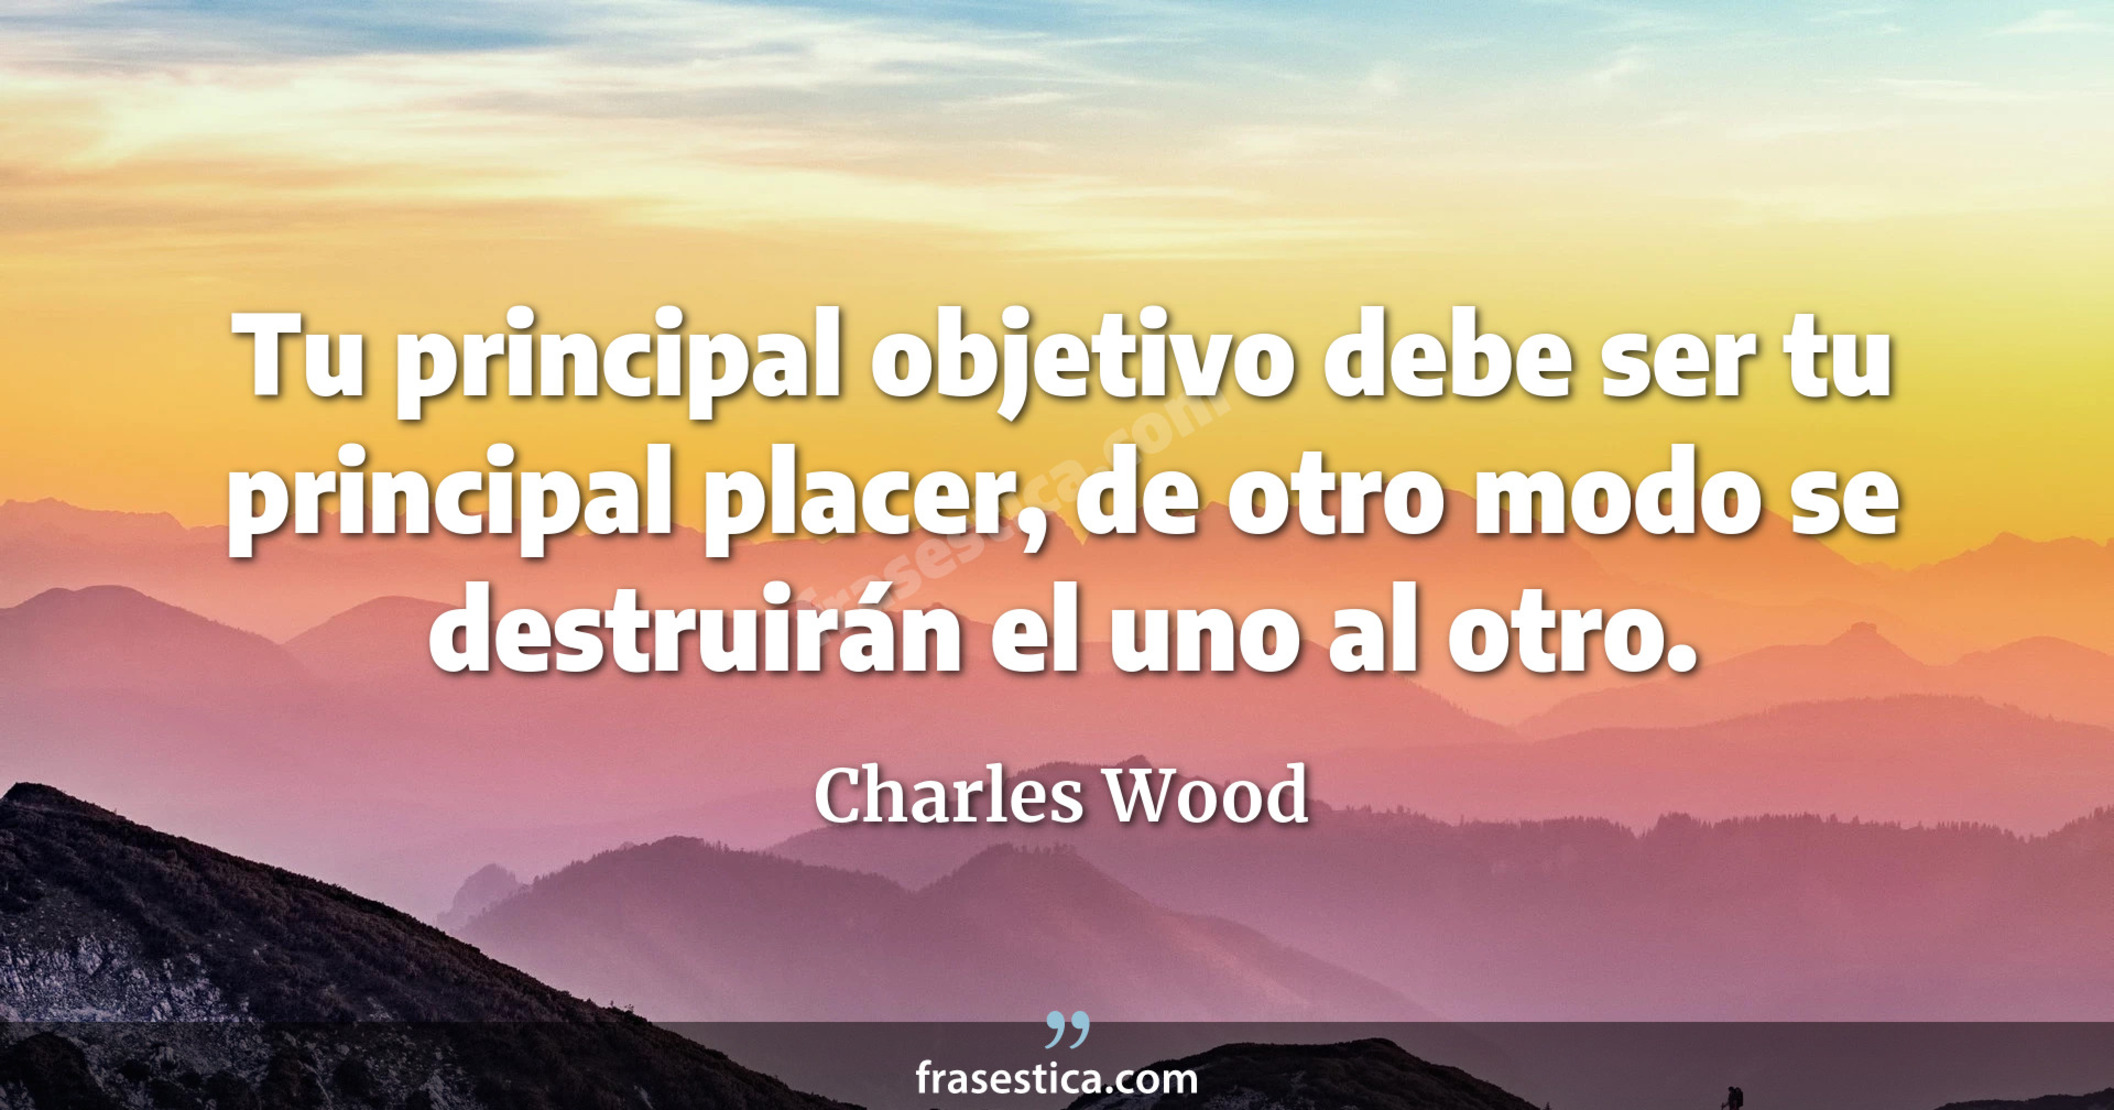 Tu principal objetivo debe ser tu principal placer, de otro modo se destruirán el uno al otro. - Charles Wood